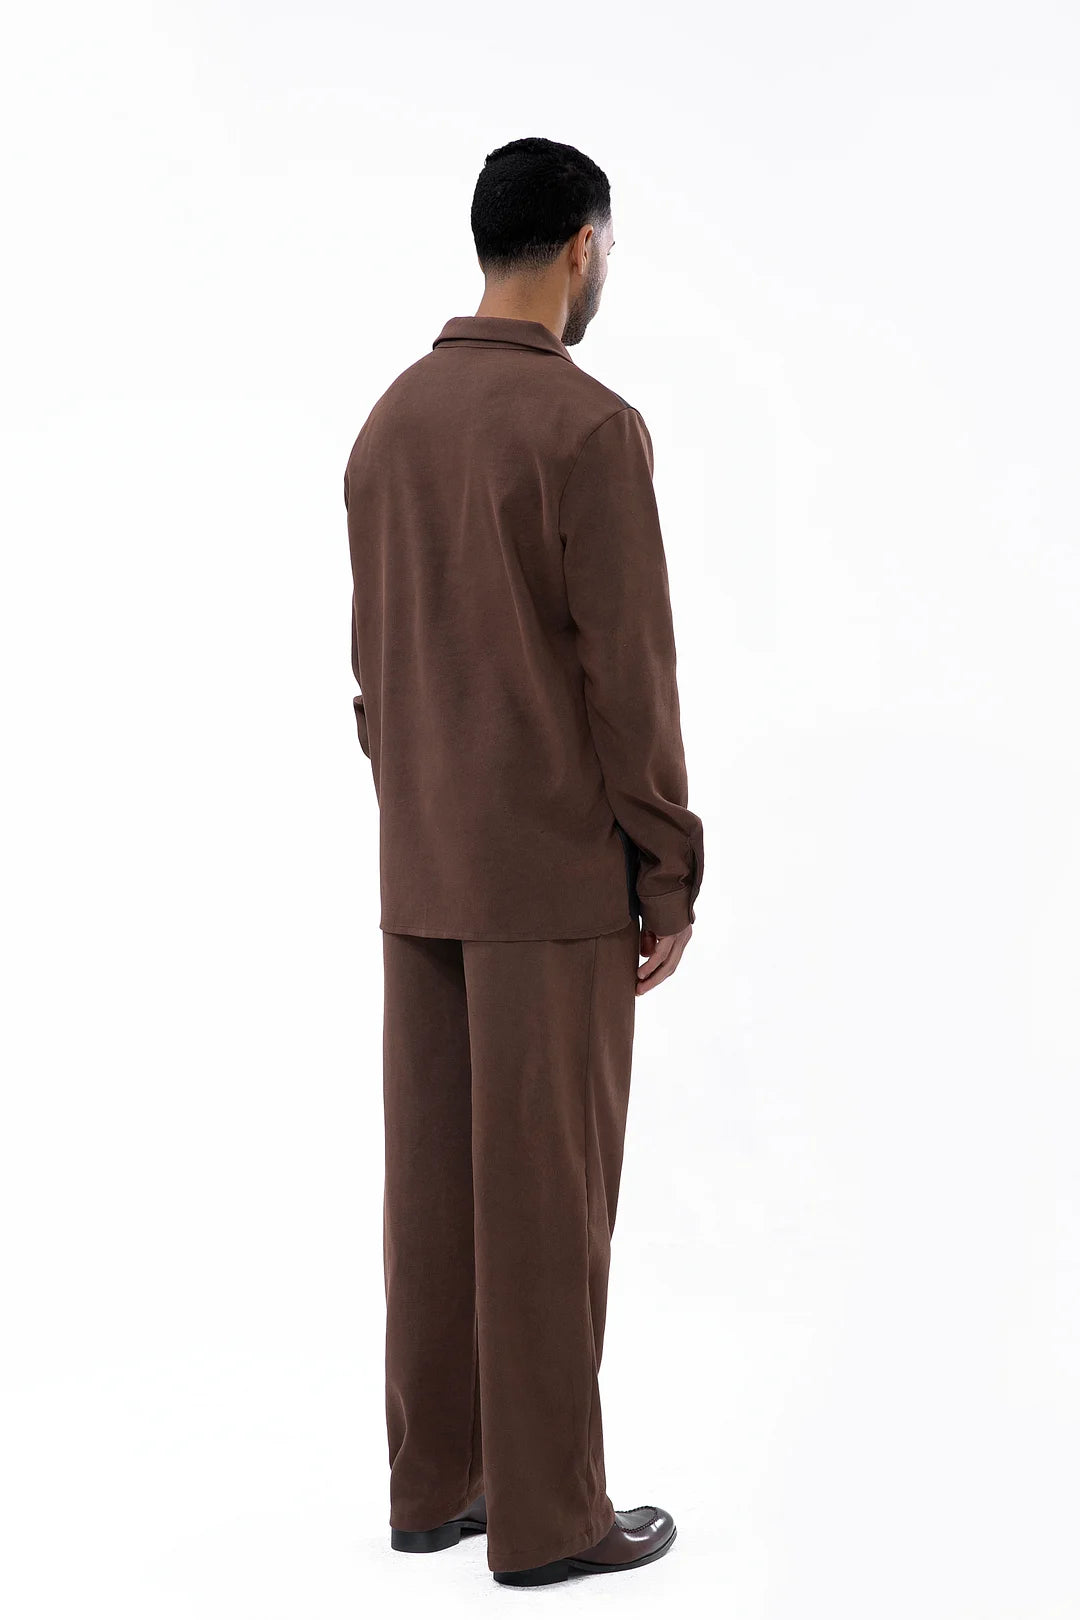 Men's Brown Suede Long Sleeve Walking Suit 028